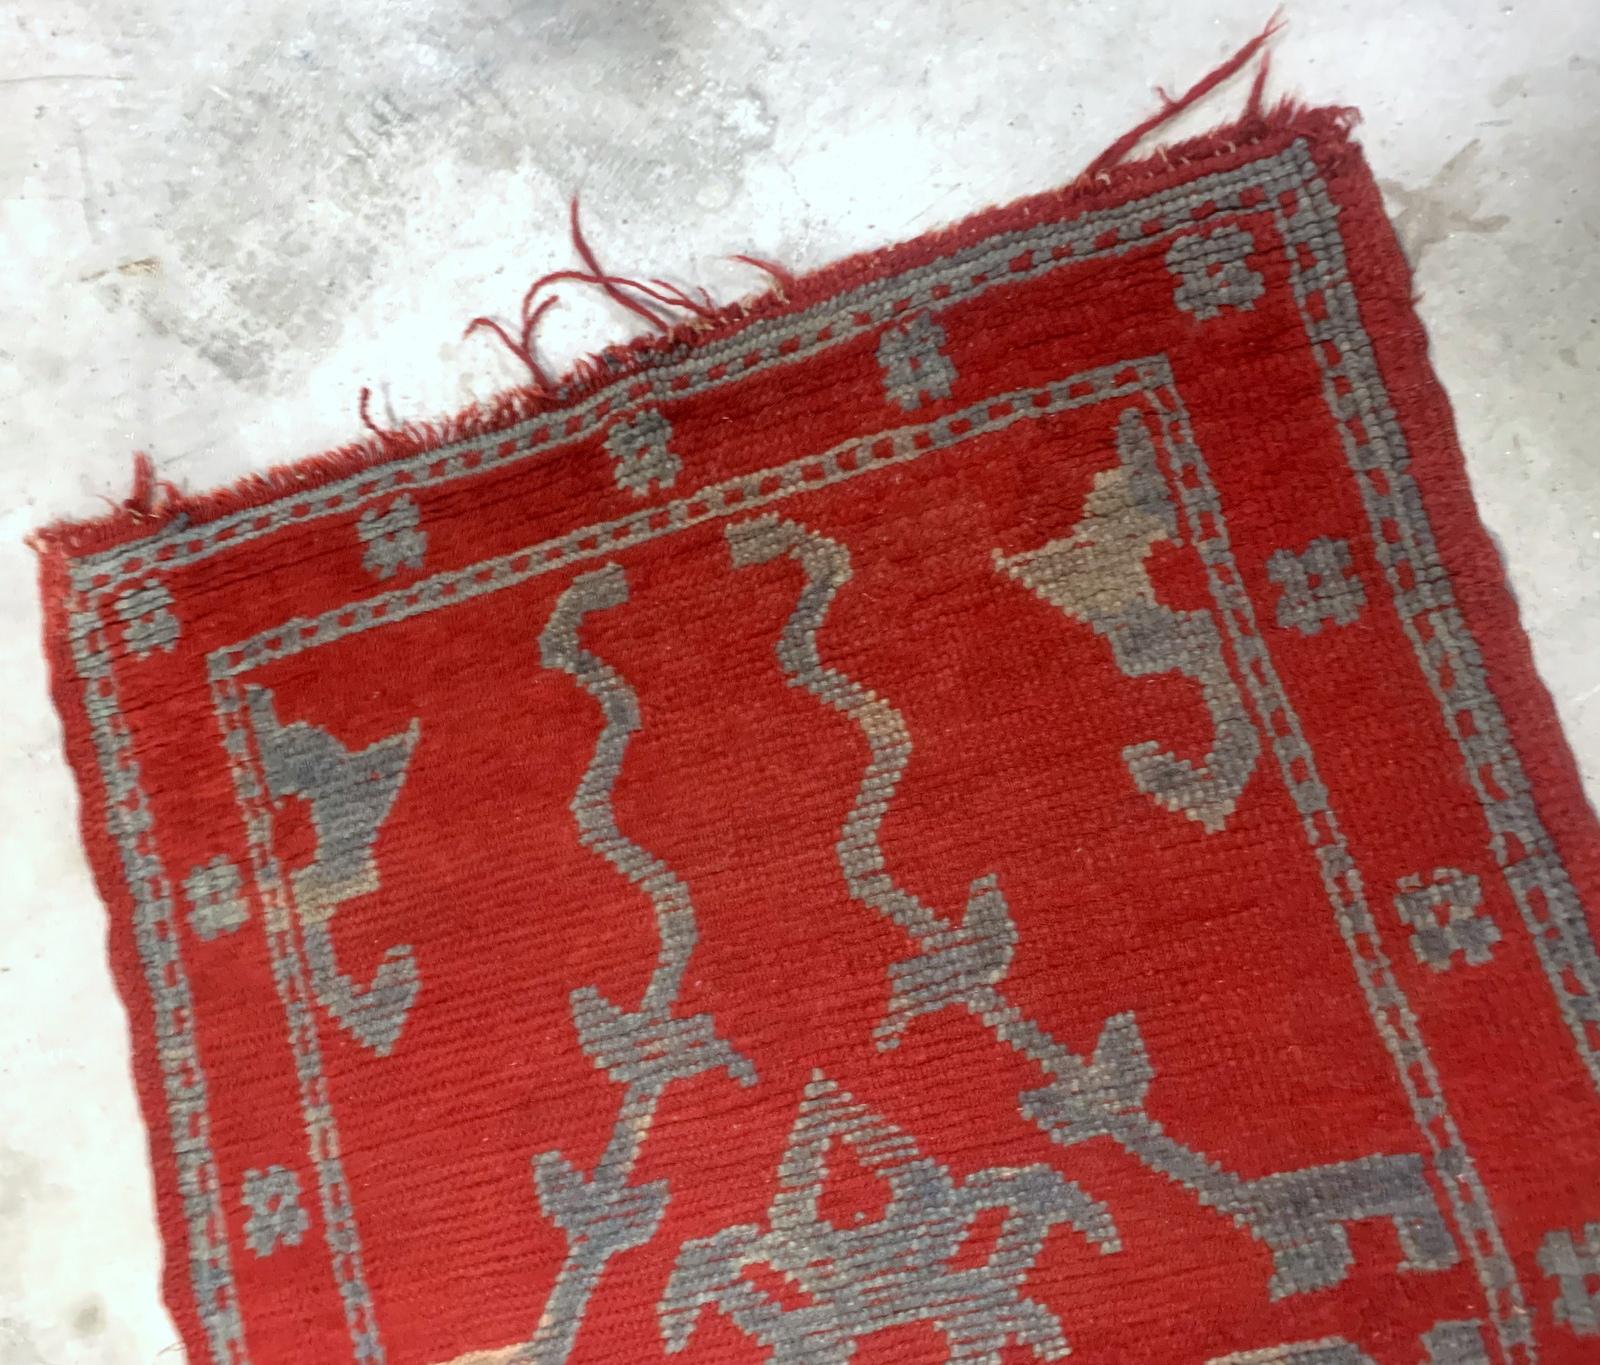 Tapis rouge turc ancien fabriqué à la main dans la région d'Oushak. Le tapis est de la fin du 19ème siècle en état original, il a quelques signes d'âge.

-état : original, quelques signes d'âge,

-vers les années 1880,

-taille : 3' x 4.9'